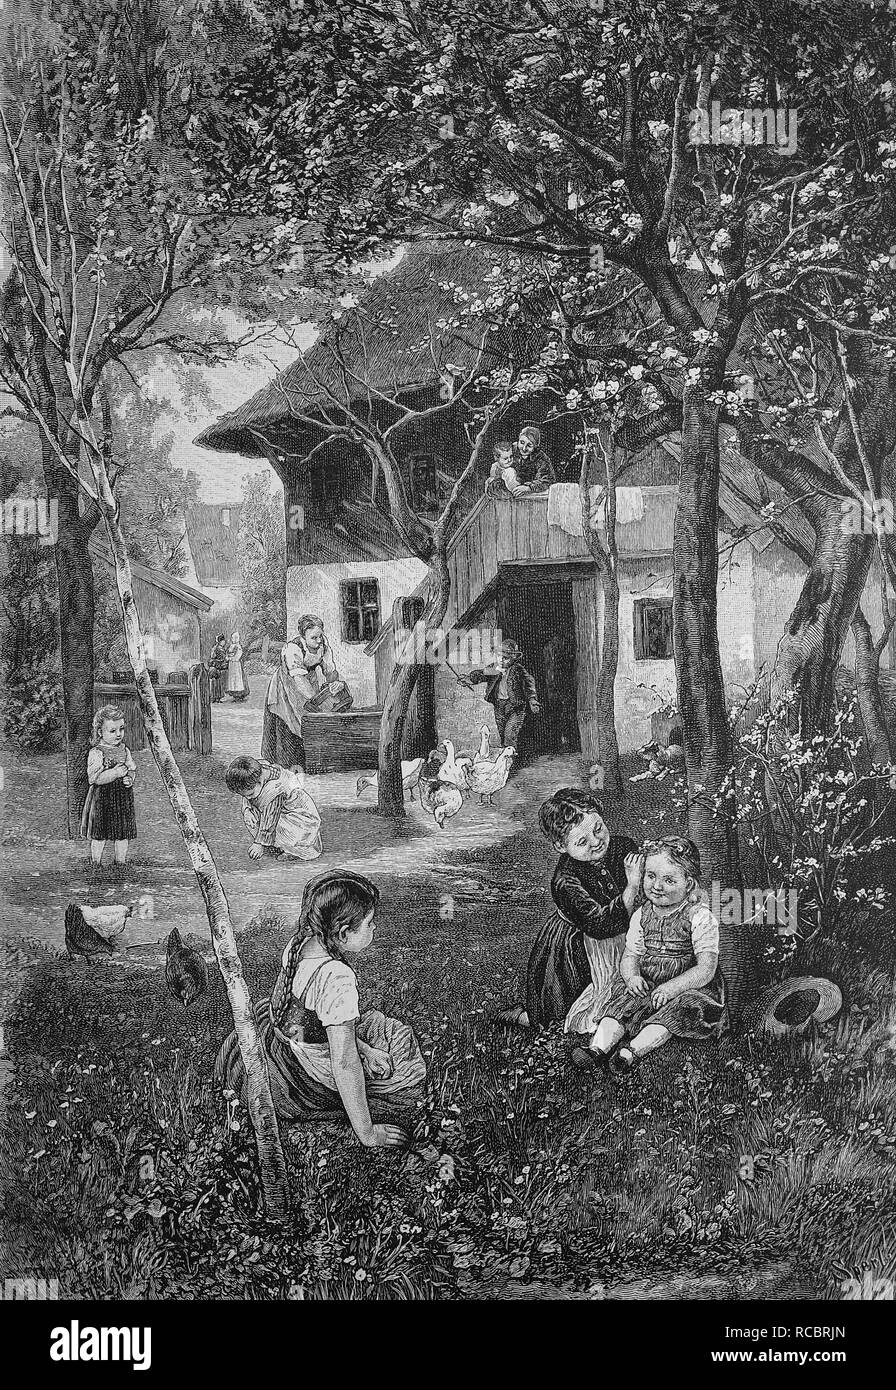 Springtime on the farm, historical engraving, 1880 Stock Photo